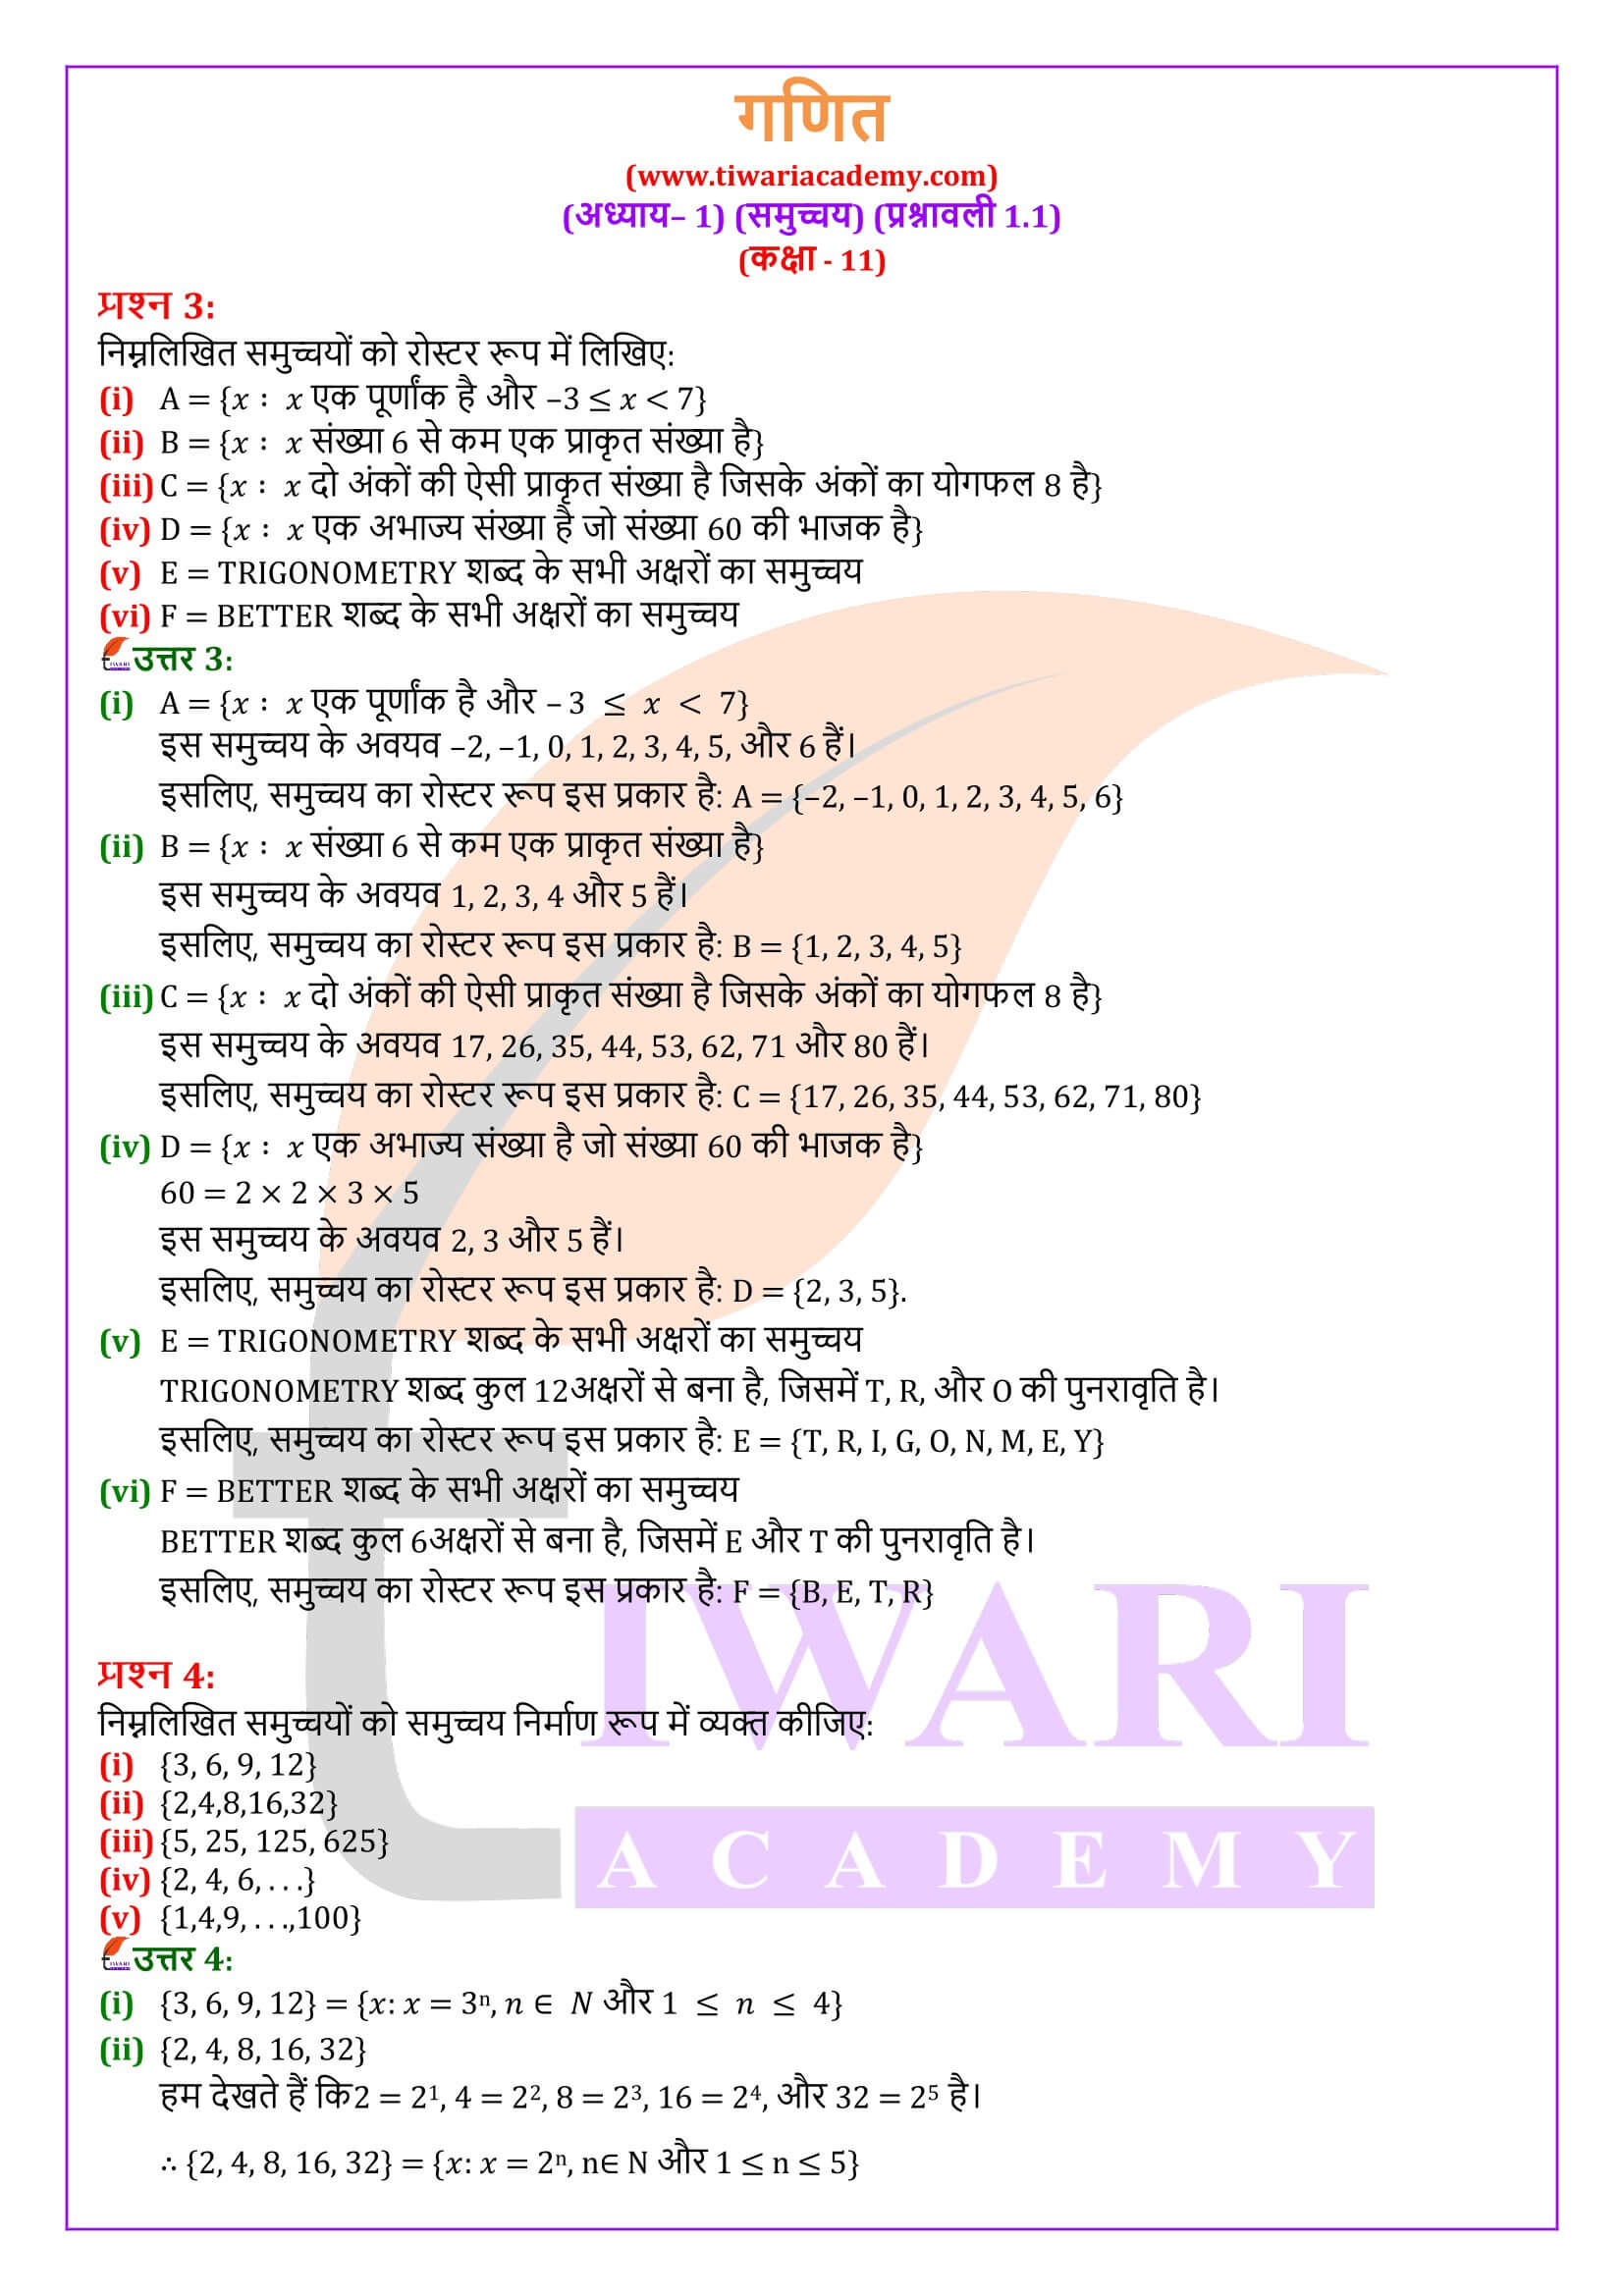 एनसीईआरटी समाधान कक्षा 11 गणित अभ्यास 1.1 के हल हिंदी में